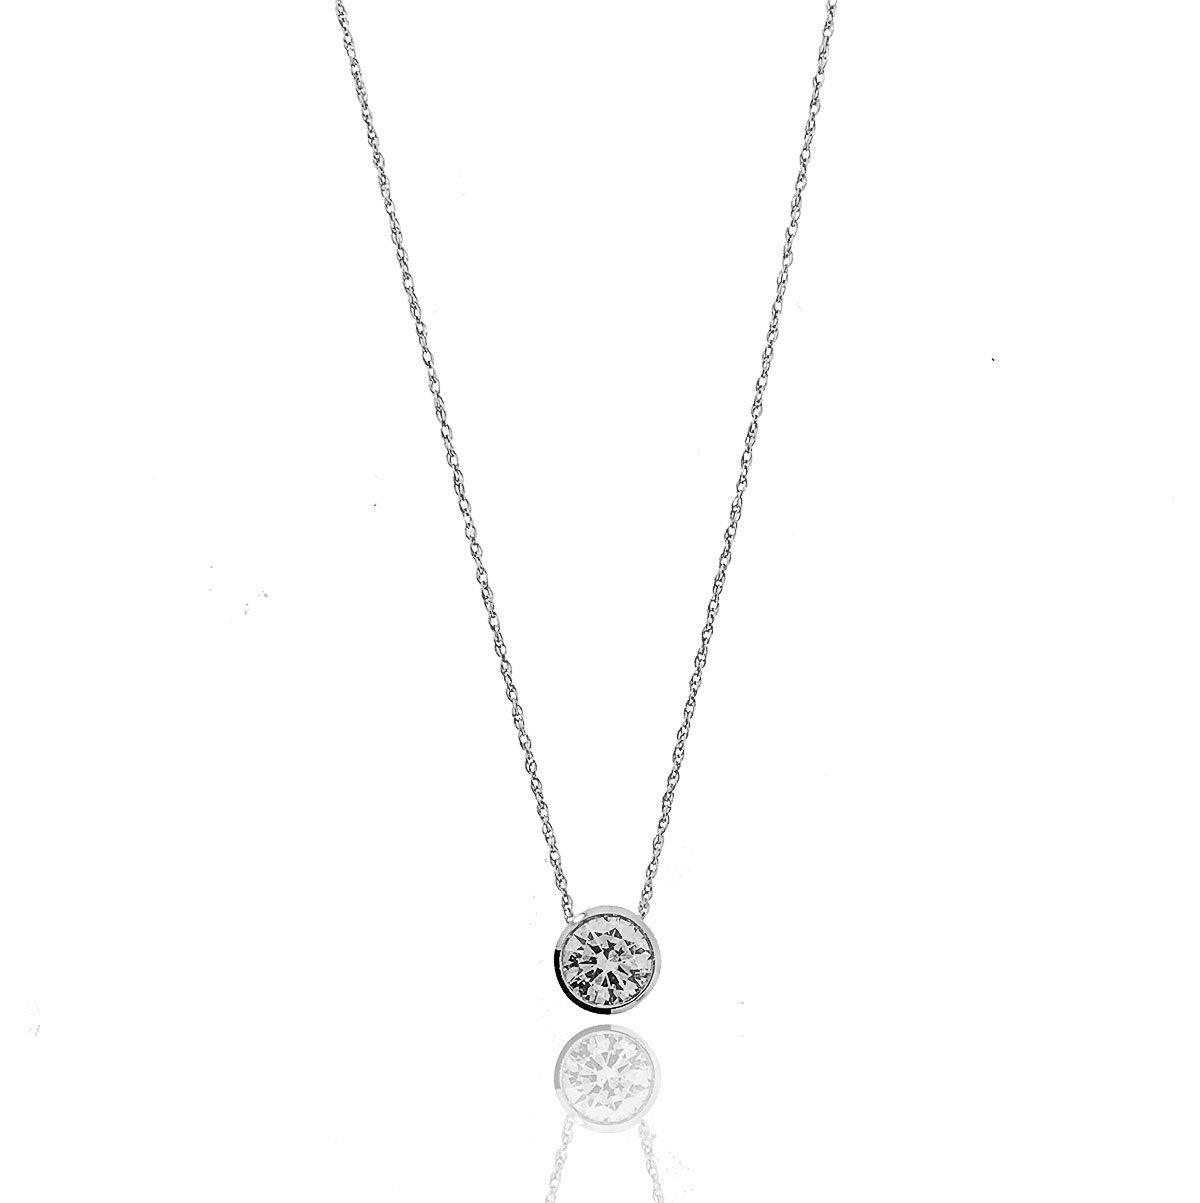 72ct Bezel Set Diamond Pendant | Grants Jewelry